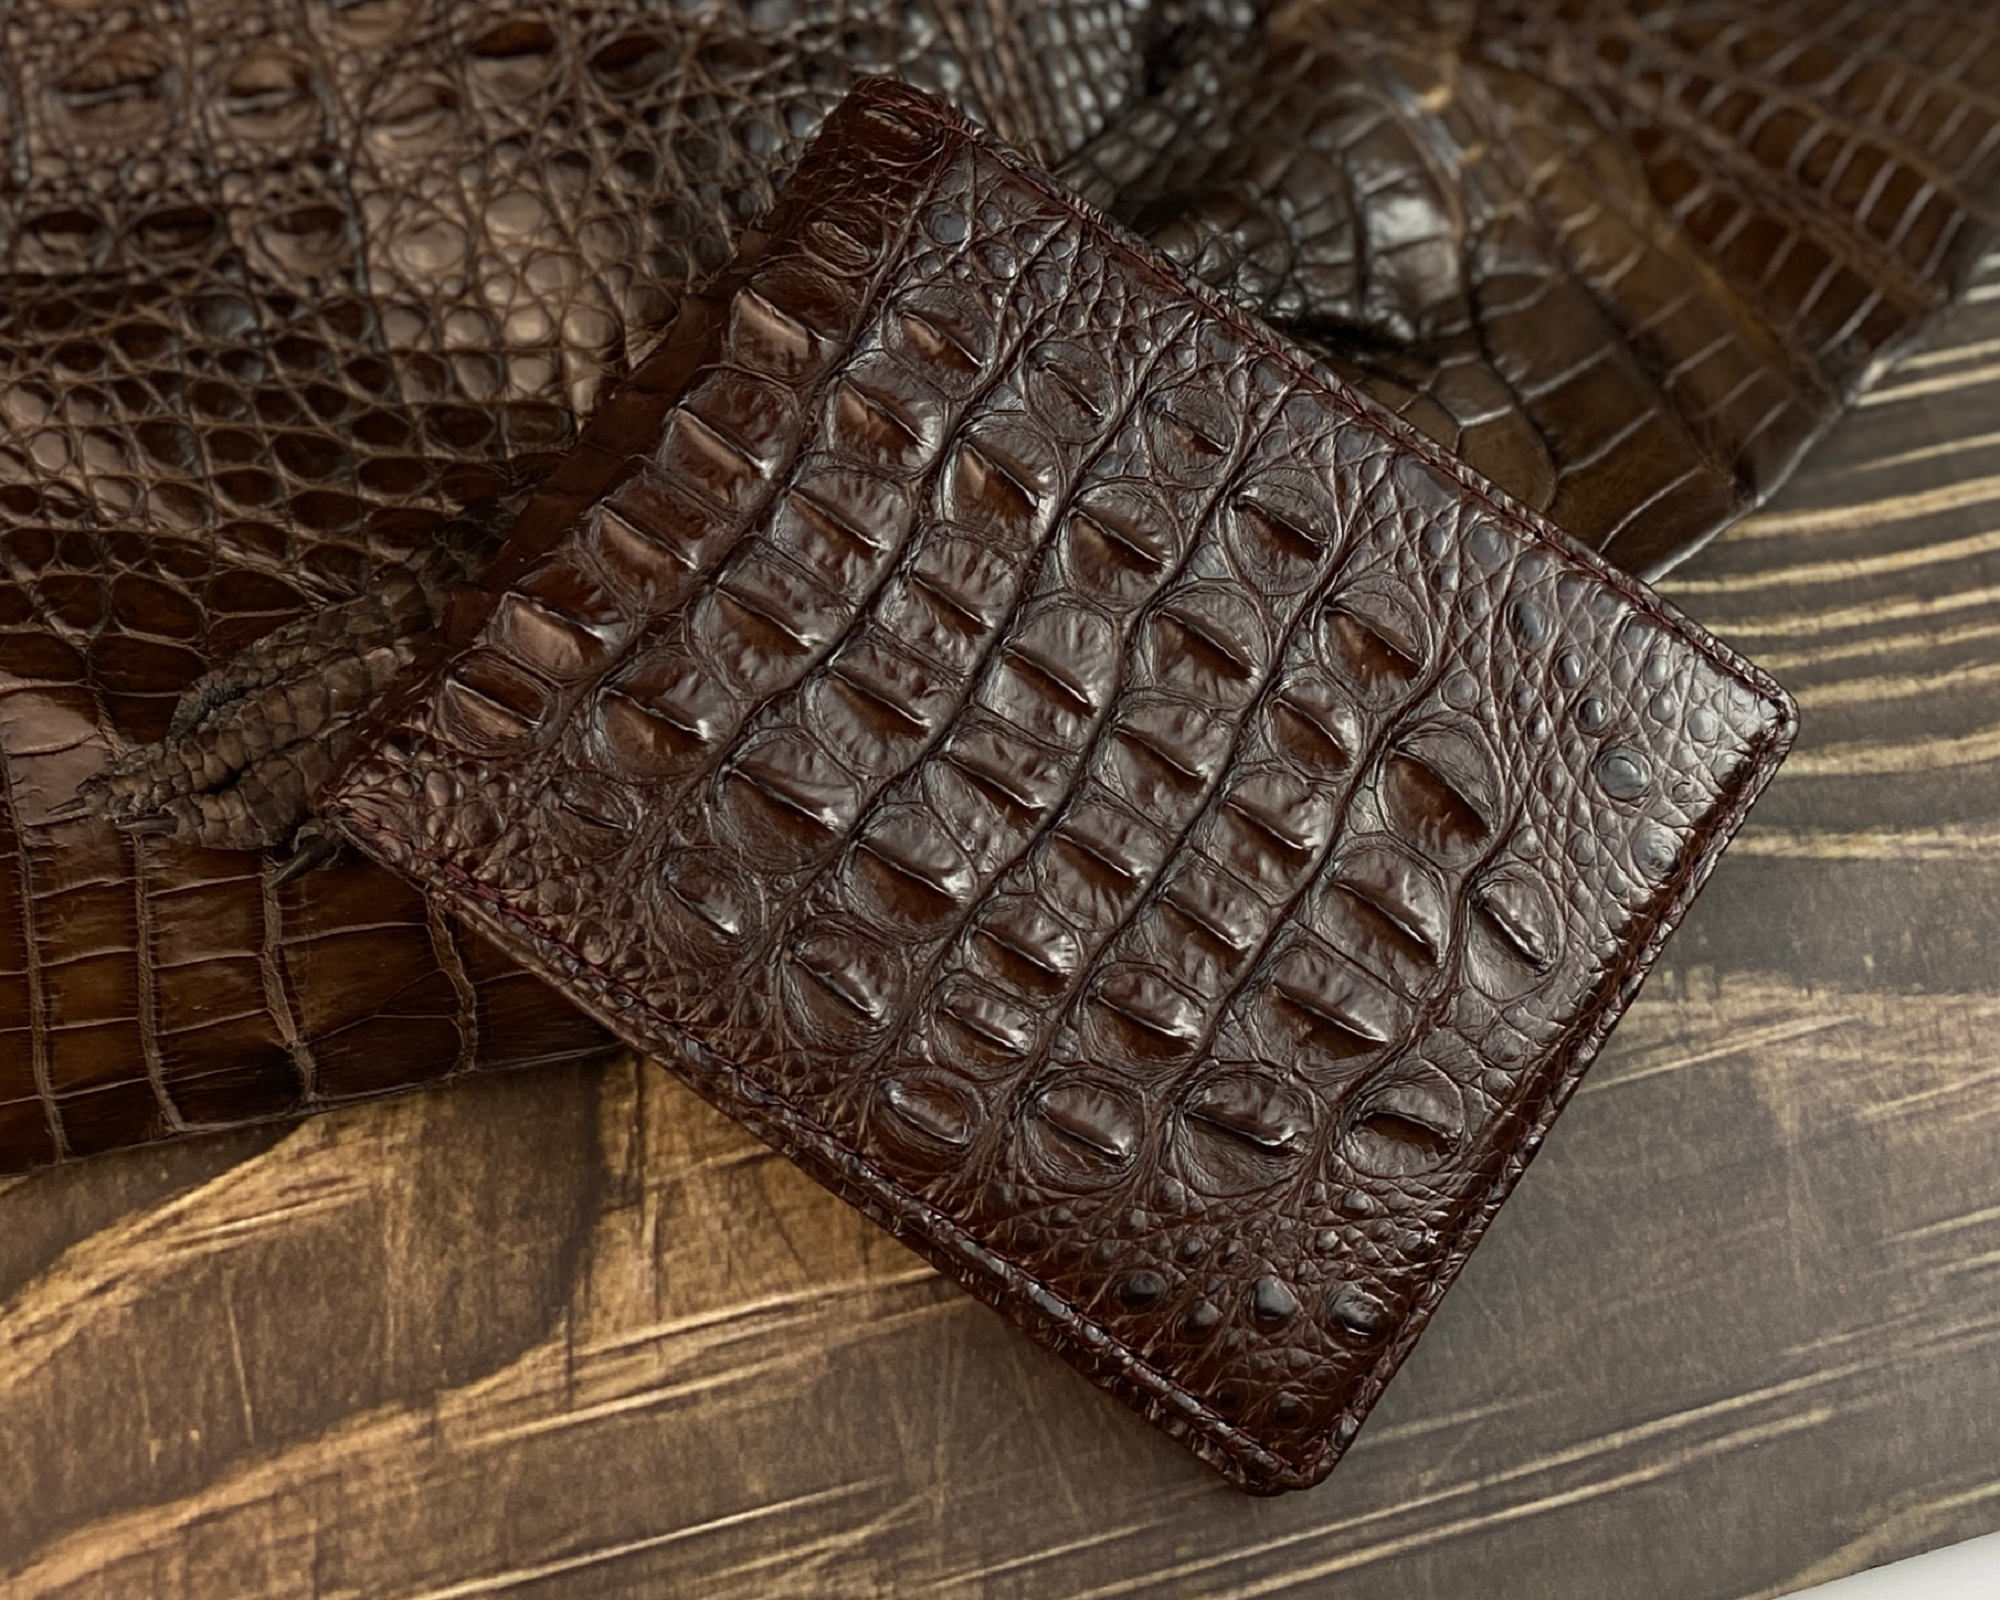 Dark Brown Alligator Wallet